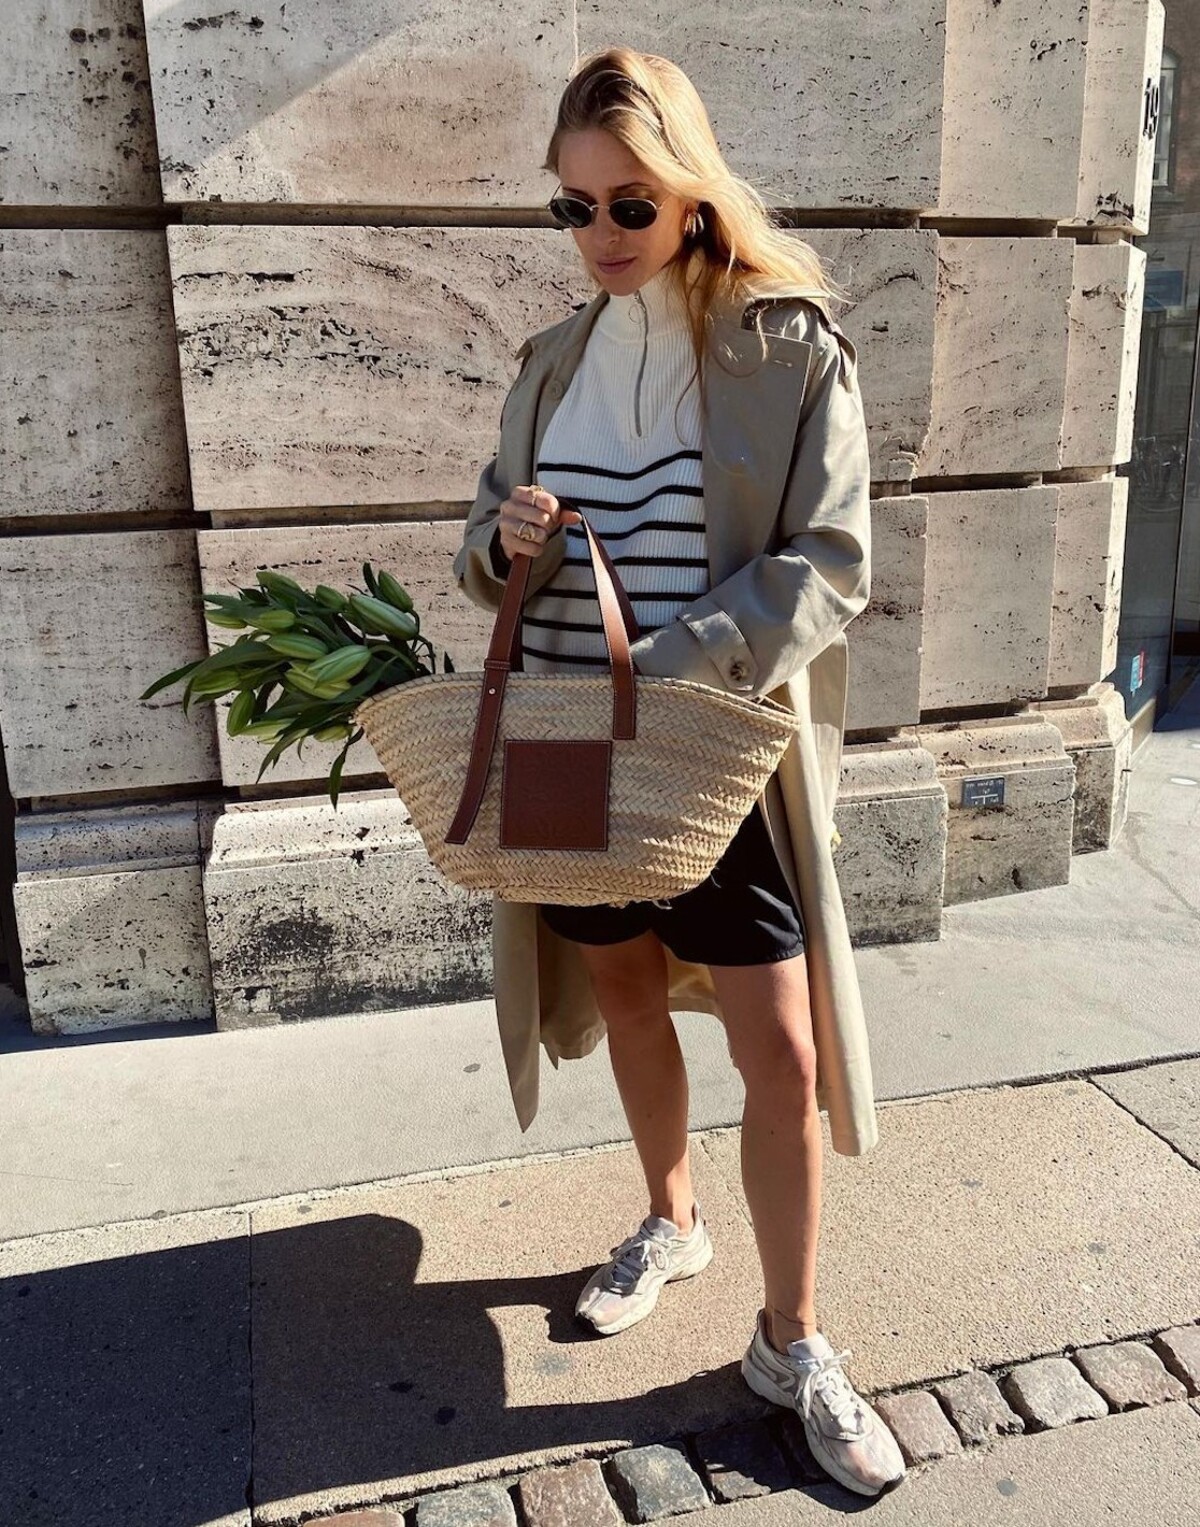 Raffa Tote Bag od Loewe je kabelkou leta všetkých It girls. Influencerka Pernille Teisbaek ju však dokáže nosiť aj v chladnejších mesiacoch. Inšpirovať sa môžeš jej outfitom na fotke.